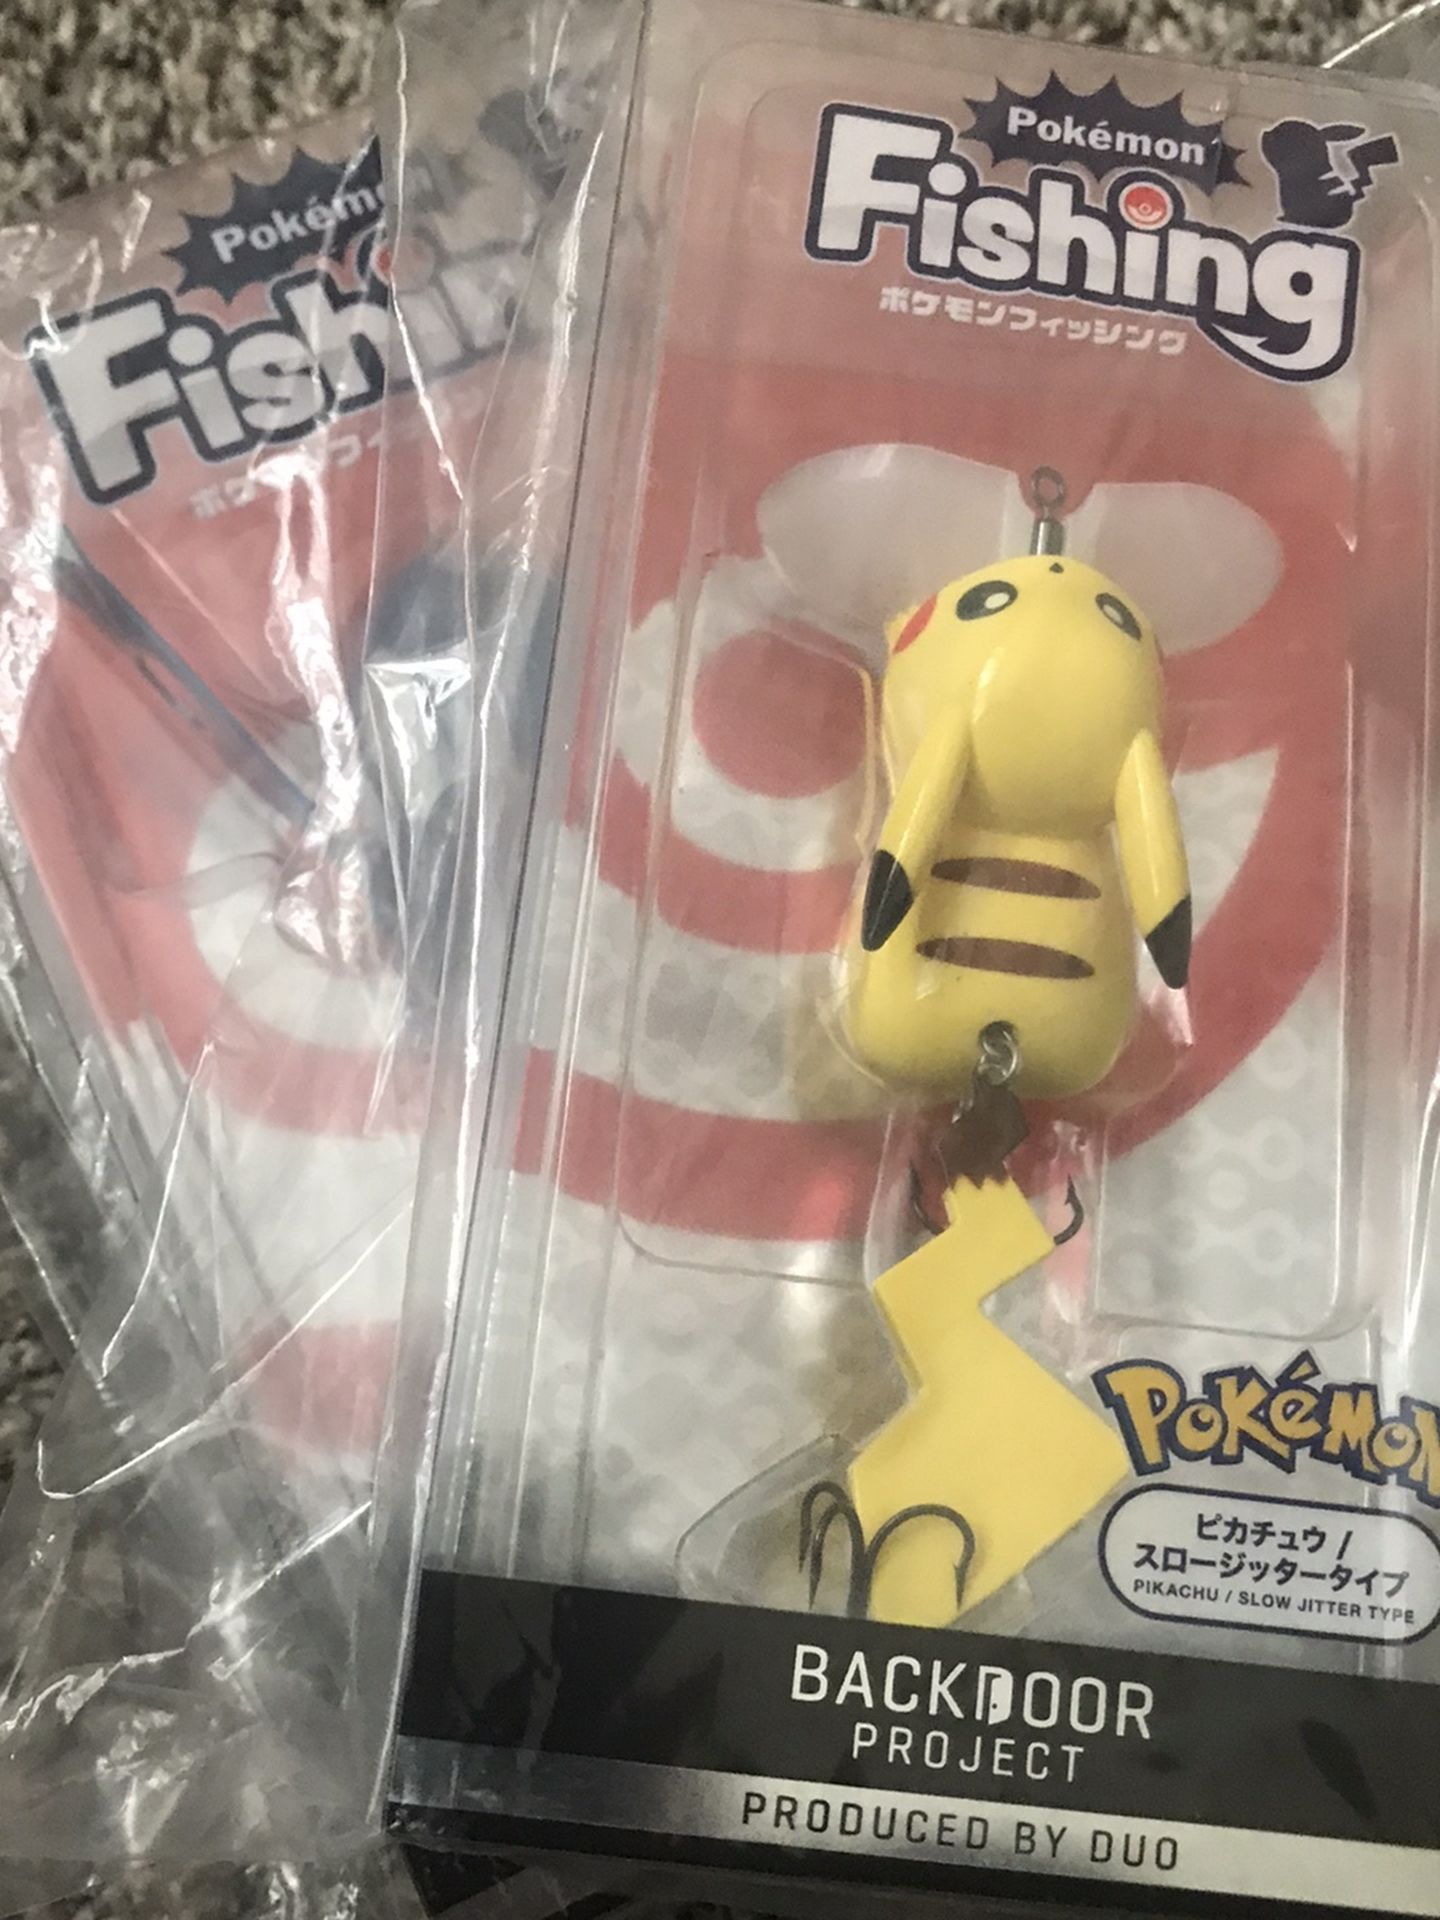 Pokemon - Fishing Lure - Duo Realis